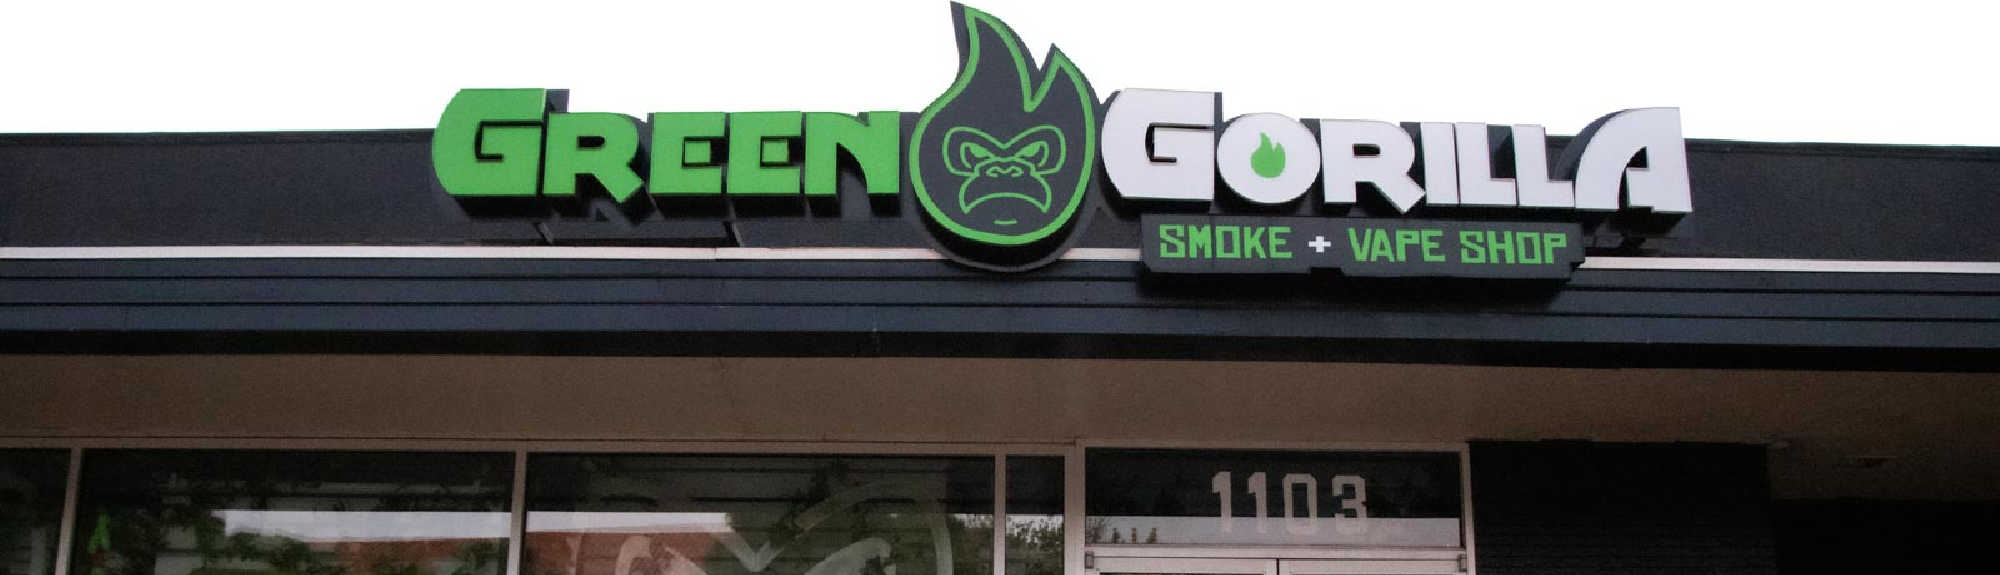 image of green gorilla smoke & vape shop